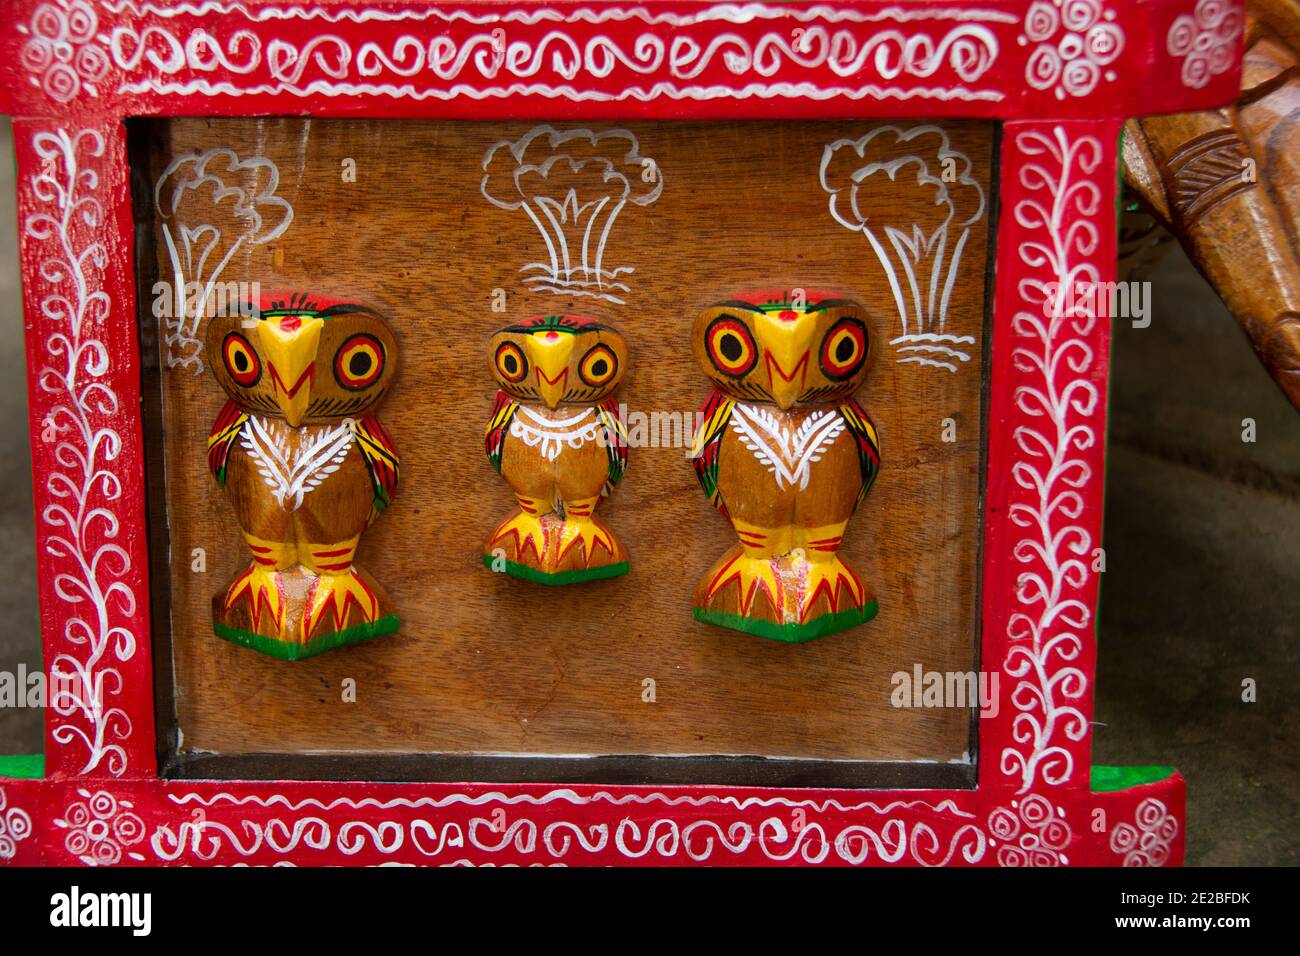 Aus einem einzigen Stück Holz geschnitzt, zeichnen sich diese Puppen aus alter Folklore und Mythologie durch ihre lebendigen Farben und unverwechselbaren ethni aus Stockfoto